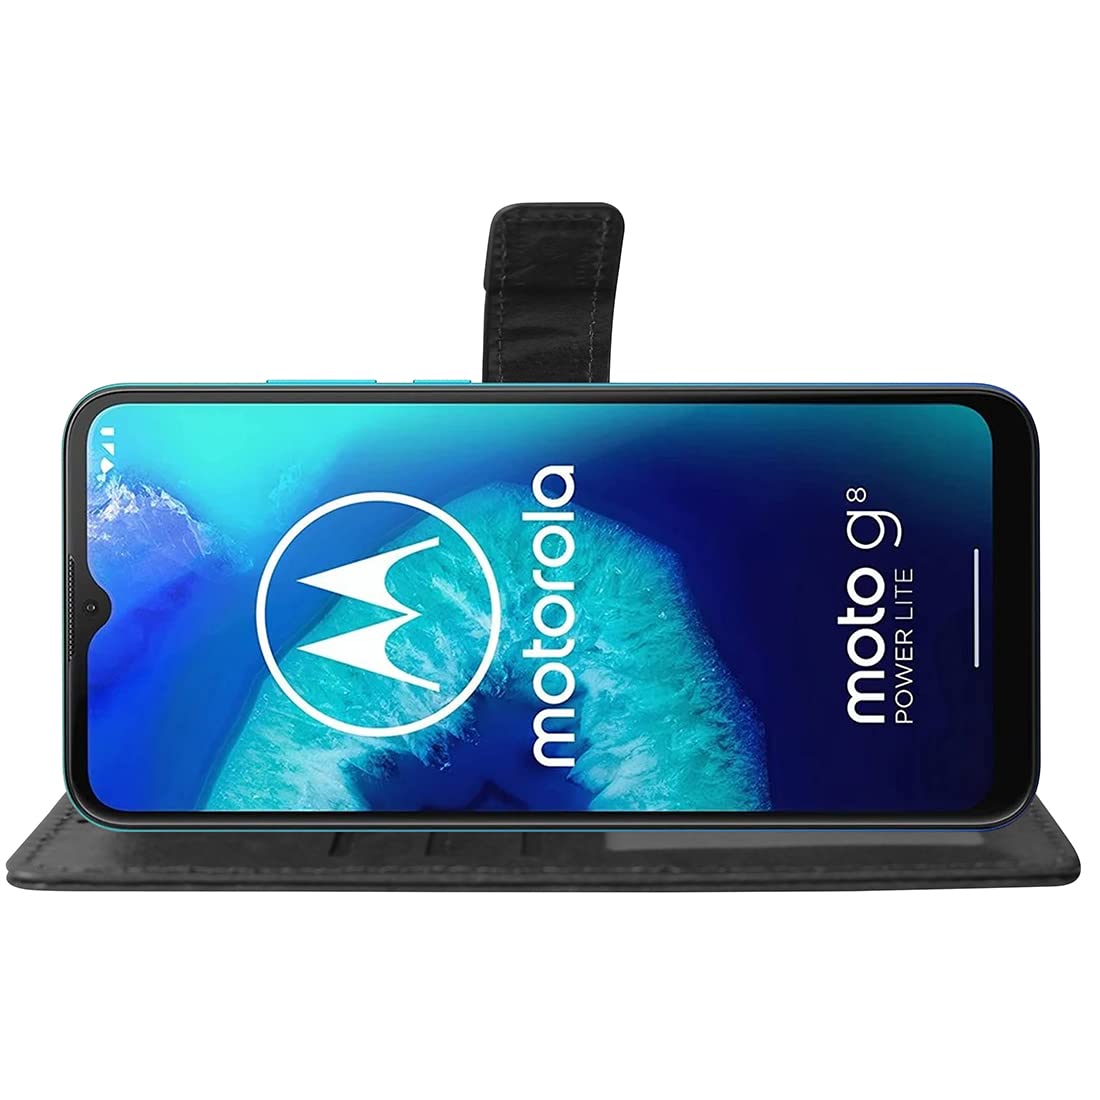 Premium Wallet Flip Cover for Motorola Moto G8 Power Lite